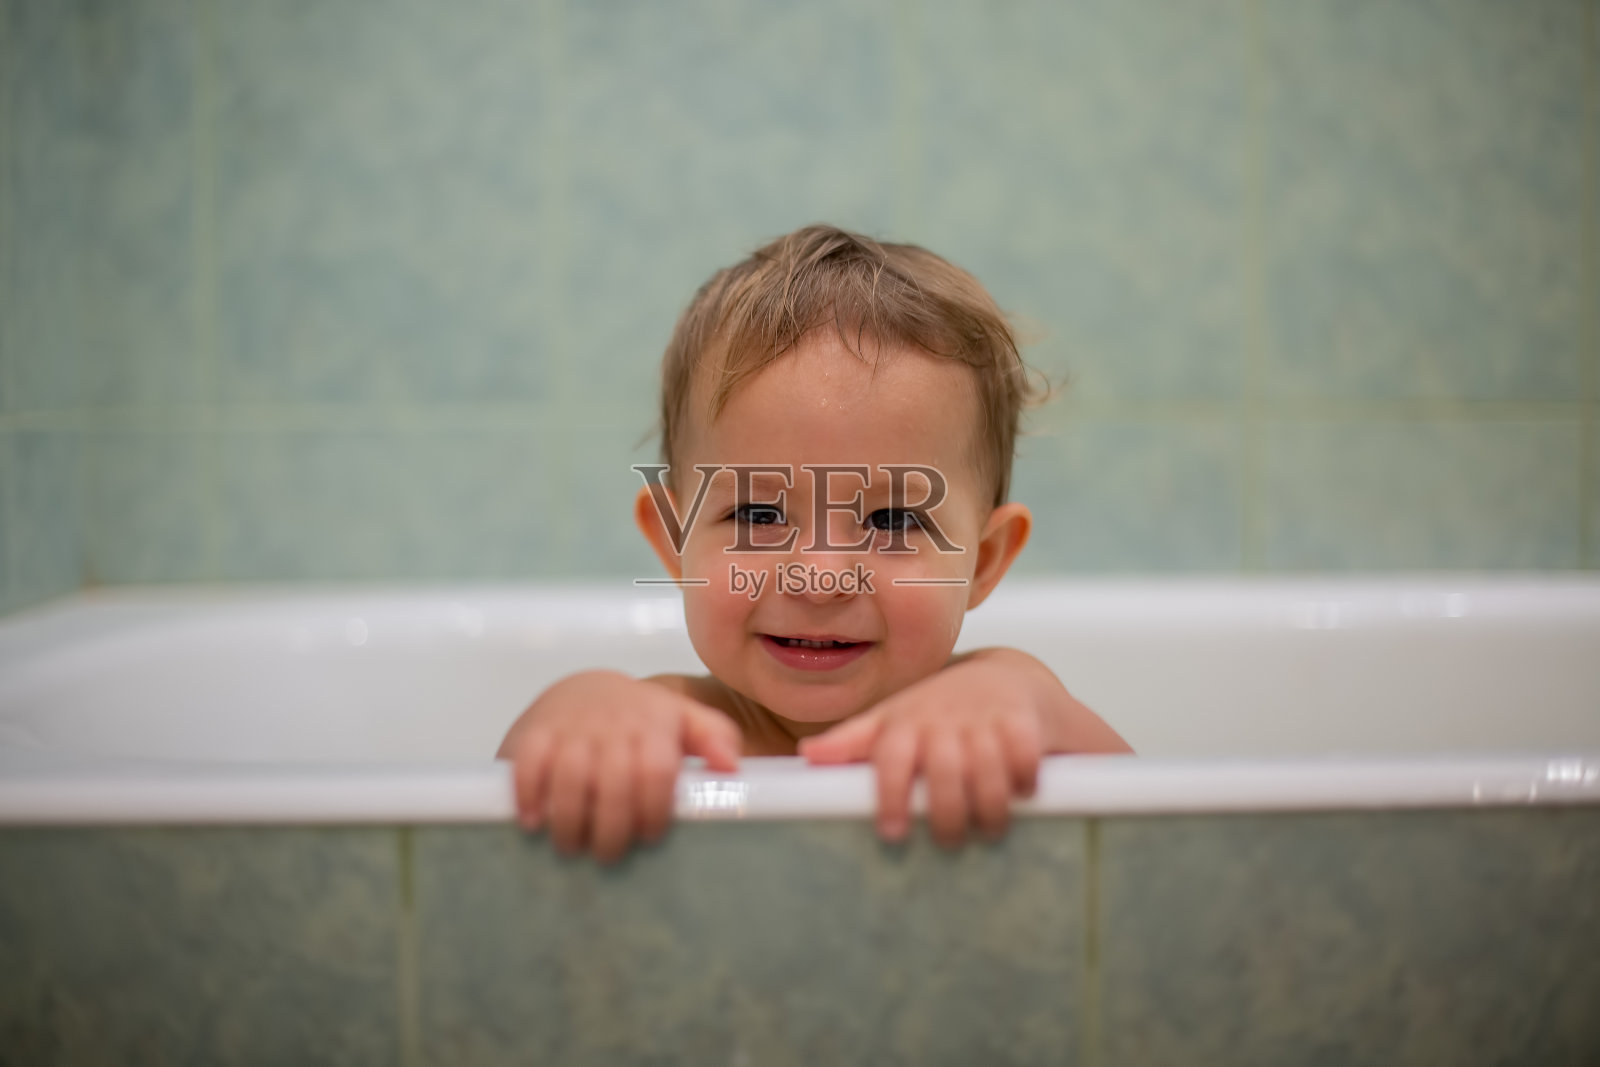 一个可爱的白人婴儿从浴缸里探出头来，把手放在浴缸边，笑着看着镜头。背景是一个模糊的绿色浴室。特写,软焦点照片摄影图片